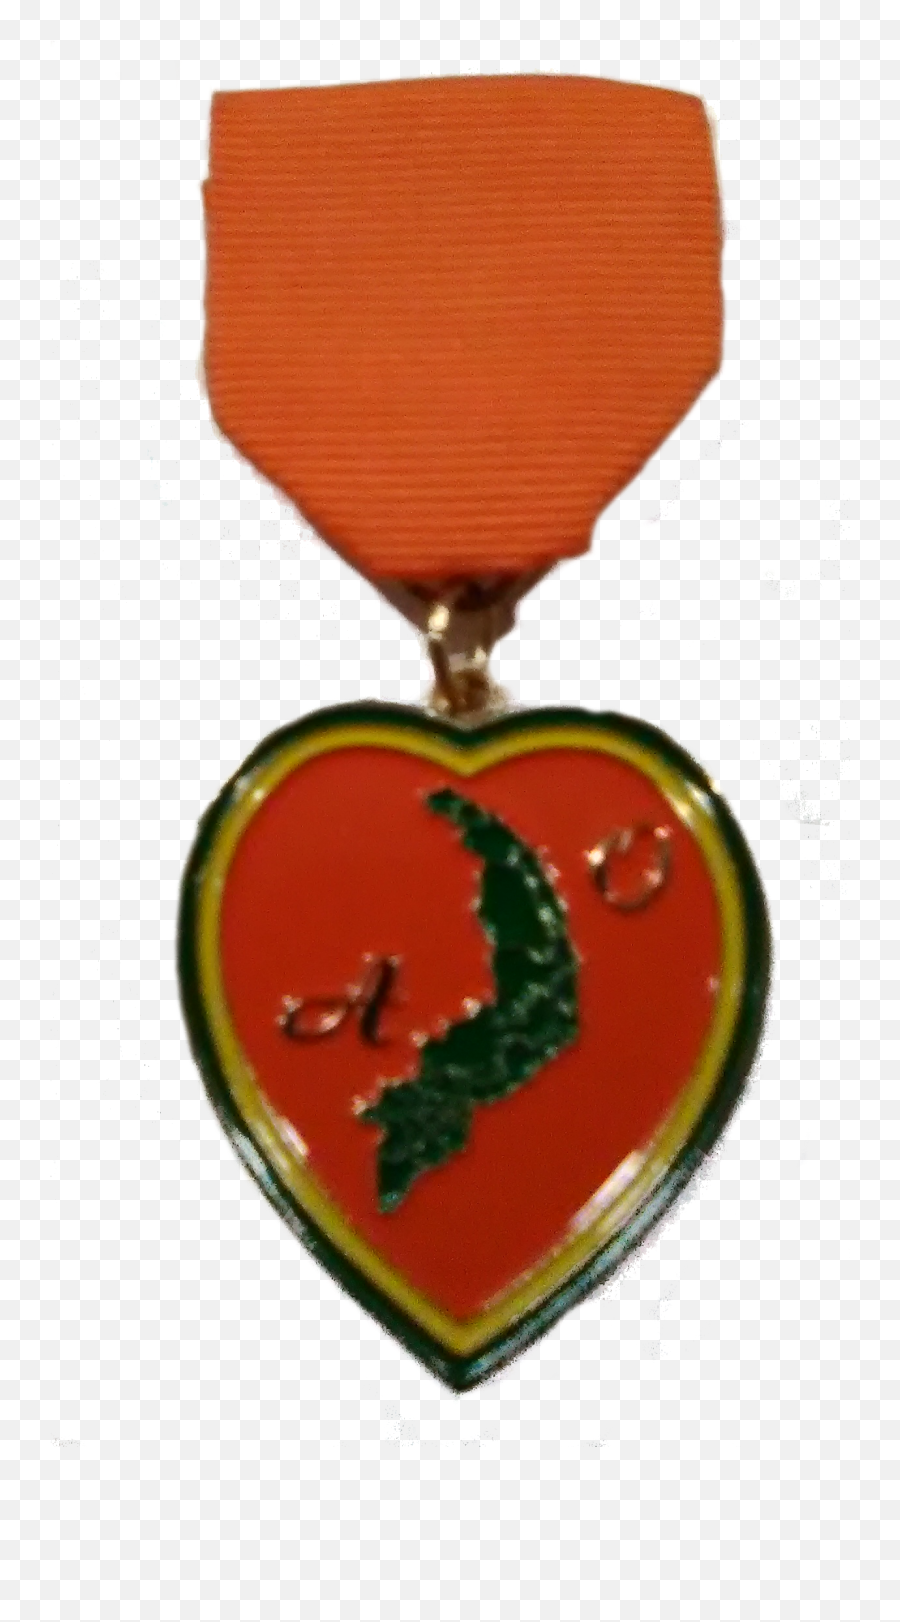 Orange Heart Medal Foundation - Medal Application Solid Png,Orange Heart Png